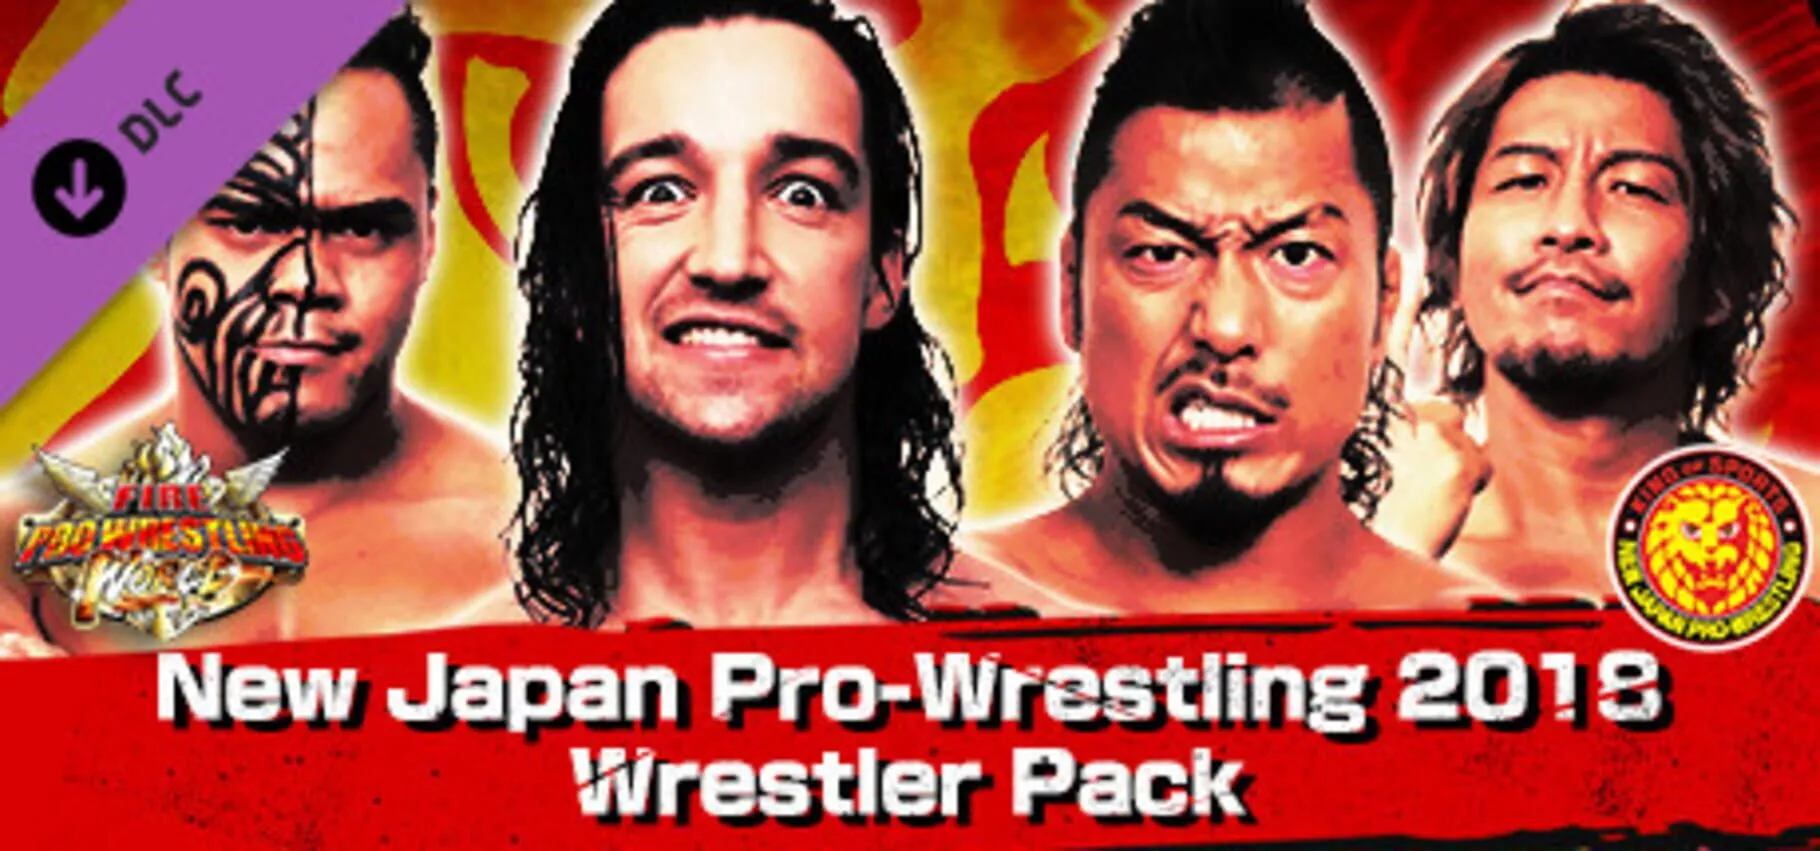 Fire Pro Wrestling World: New Japan Pro-Wrestling 2018 Wrestler Pack Box Art